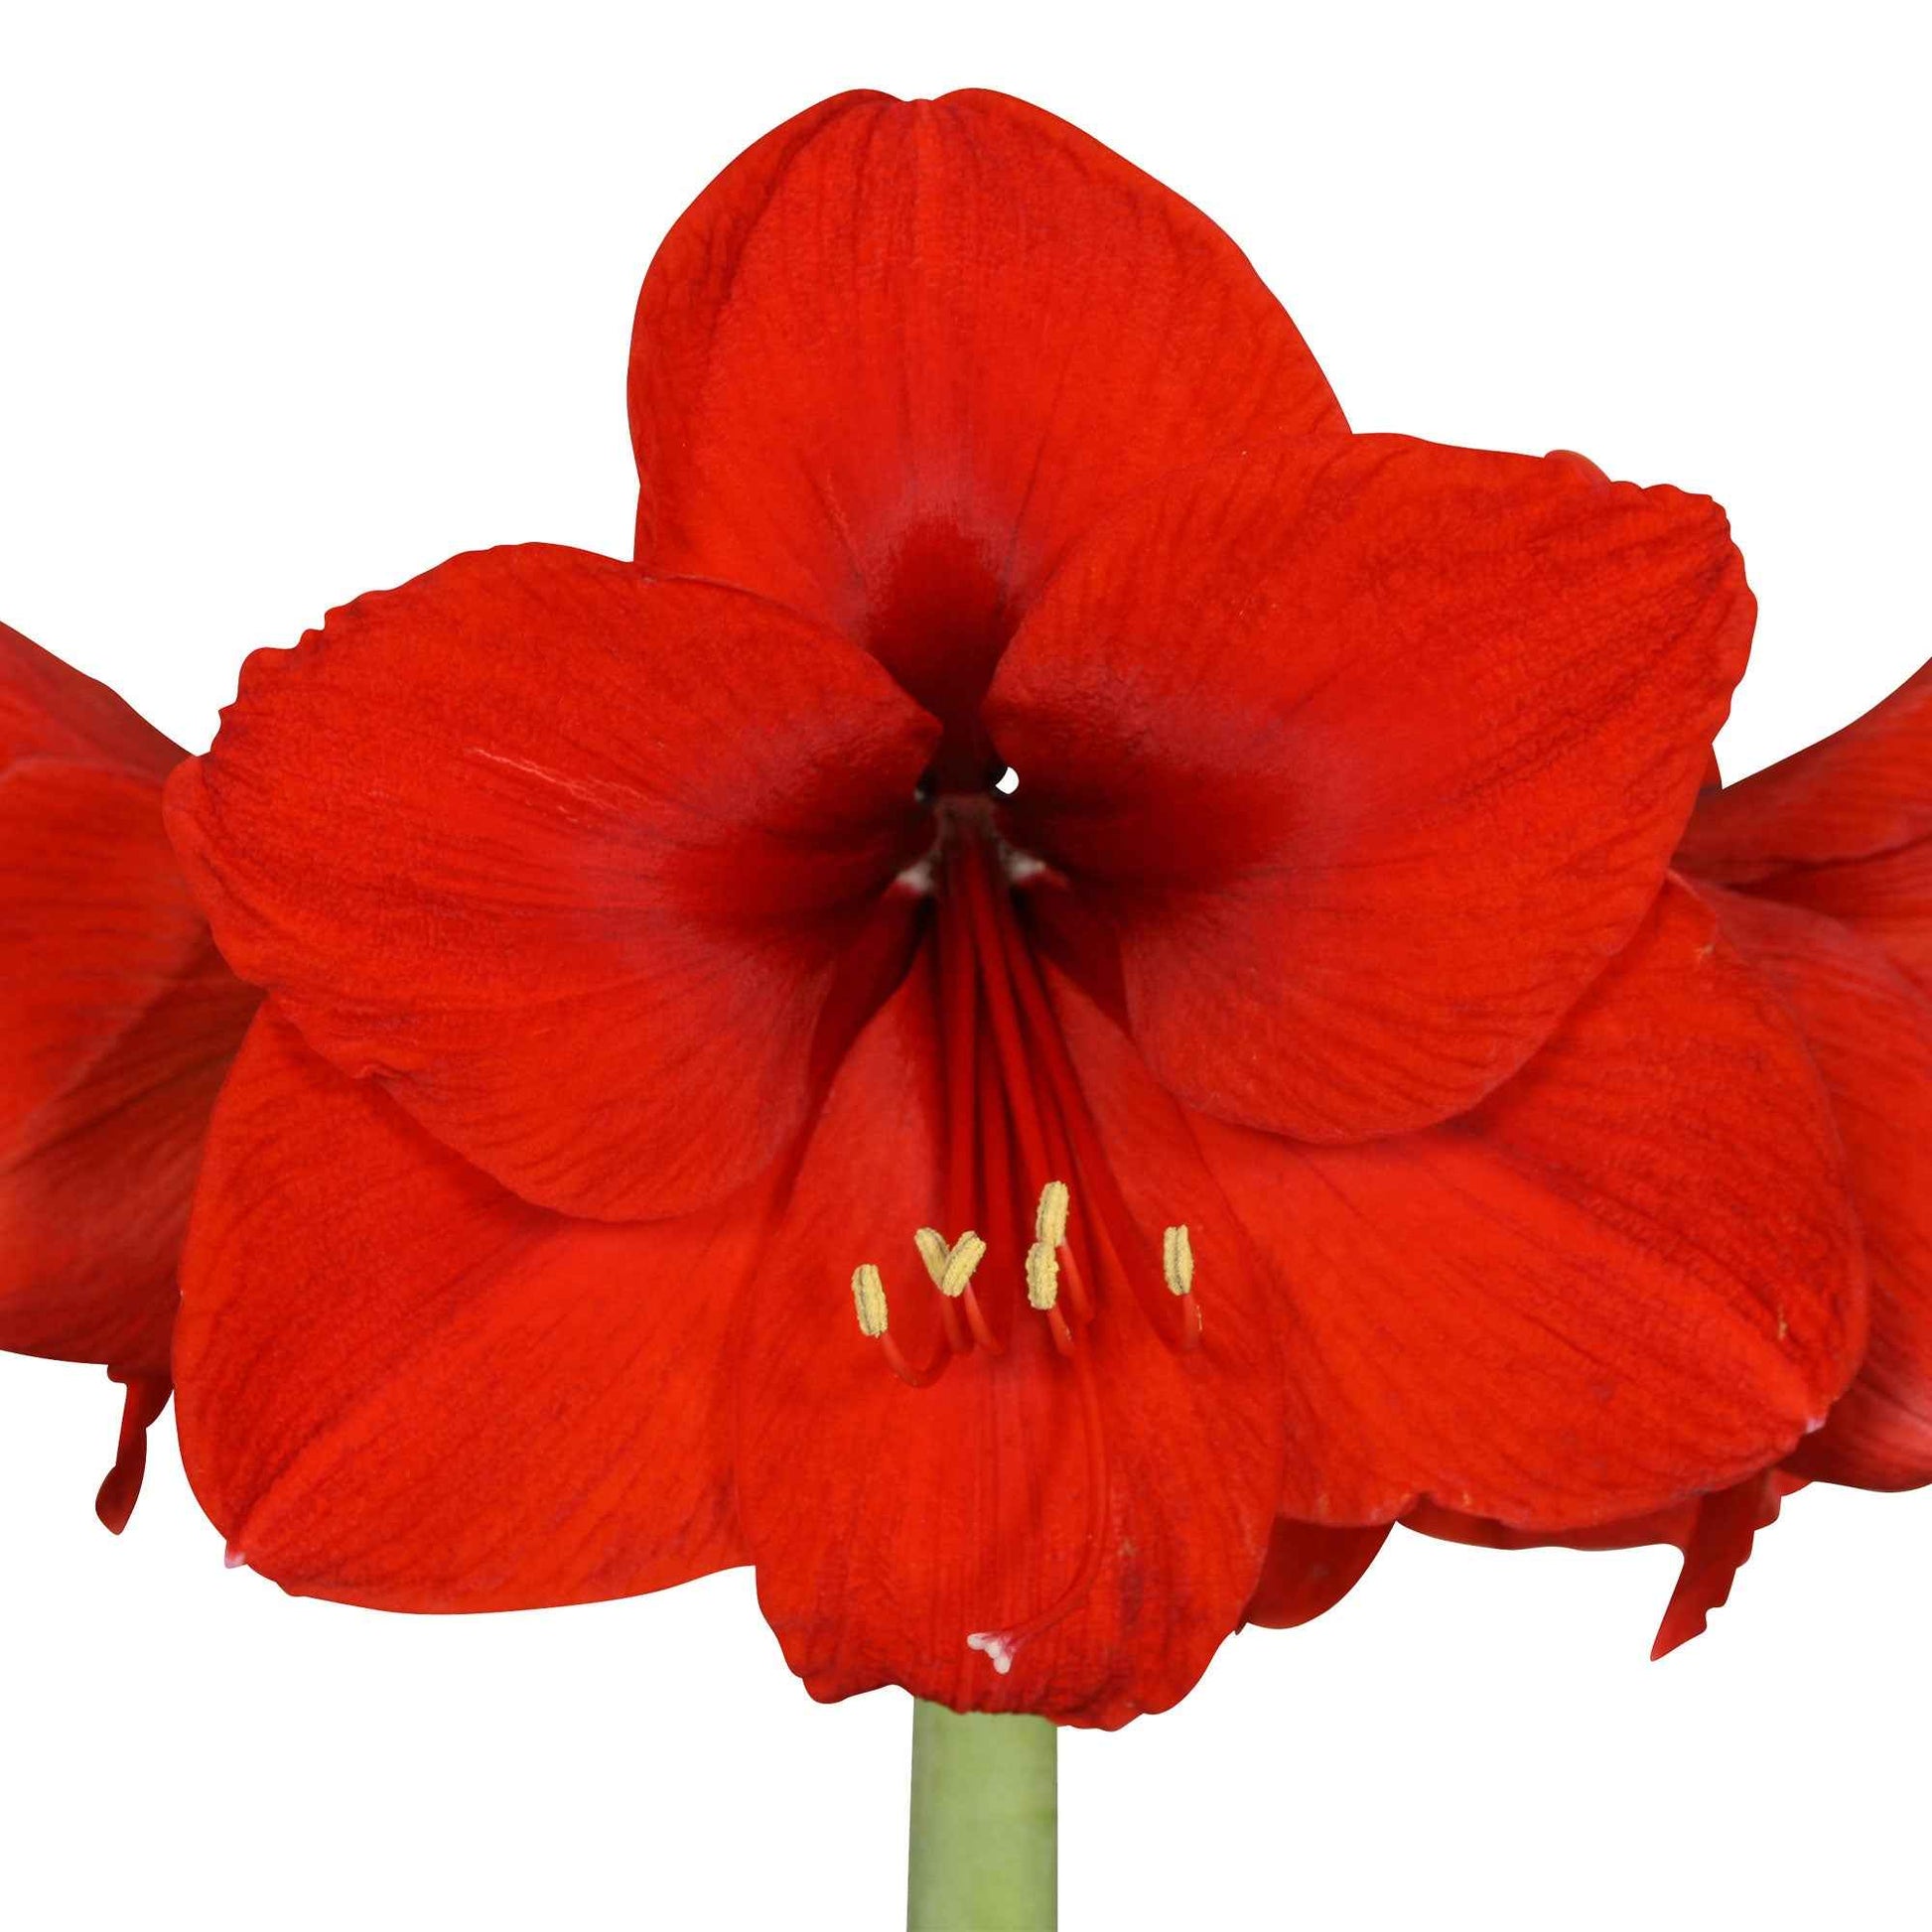 2x Amaryllis Hippeastrum rood incl. sierpotten - Alle populaire bloembollen